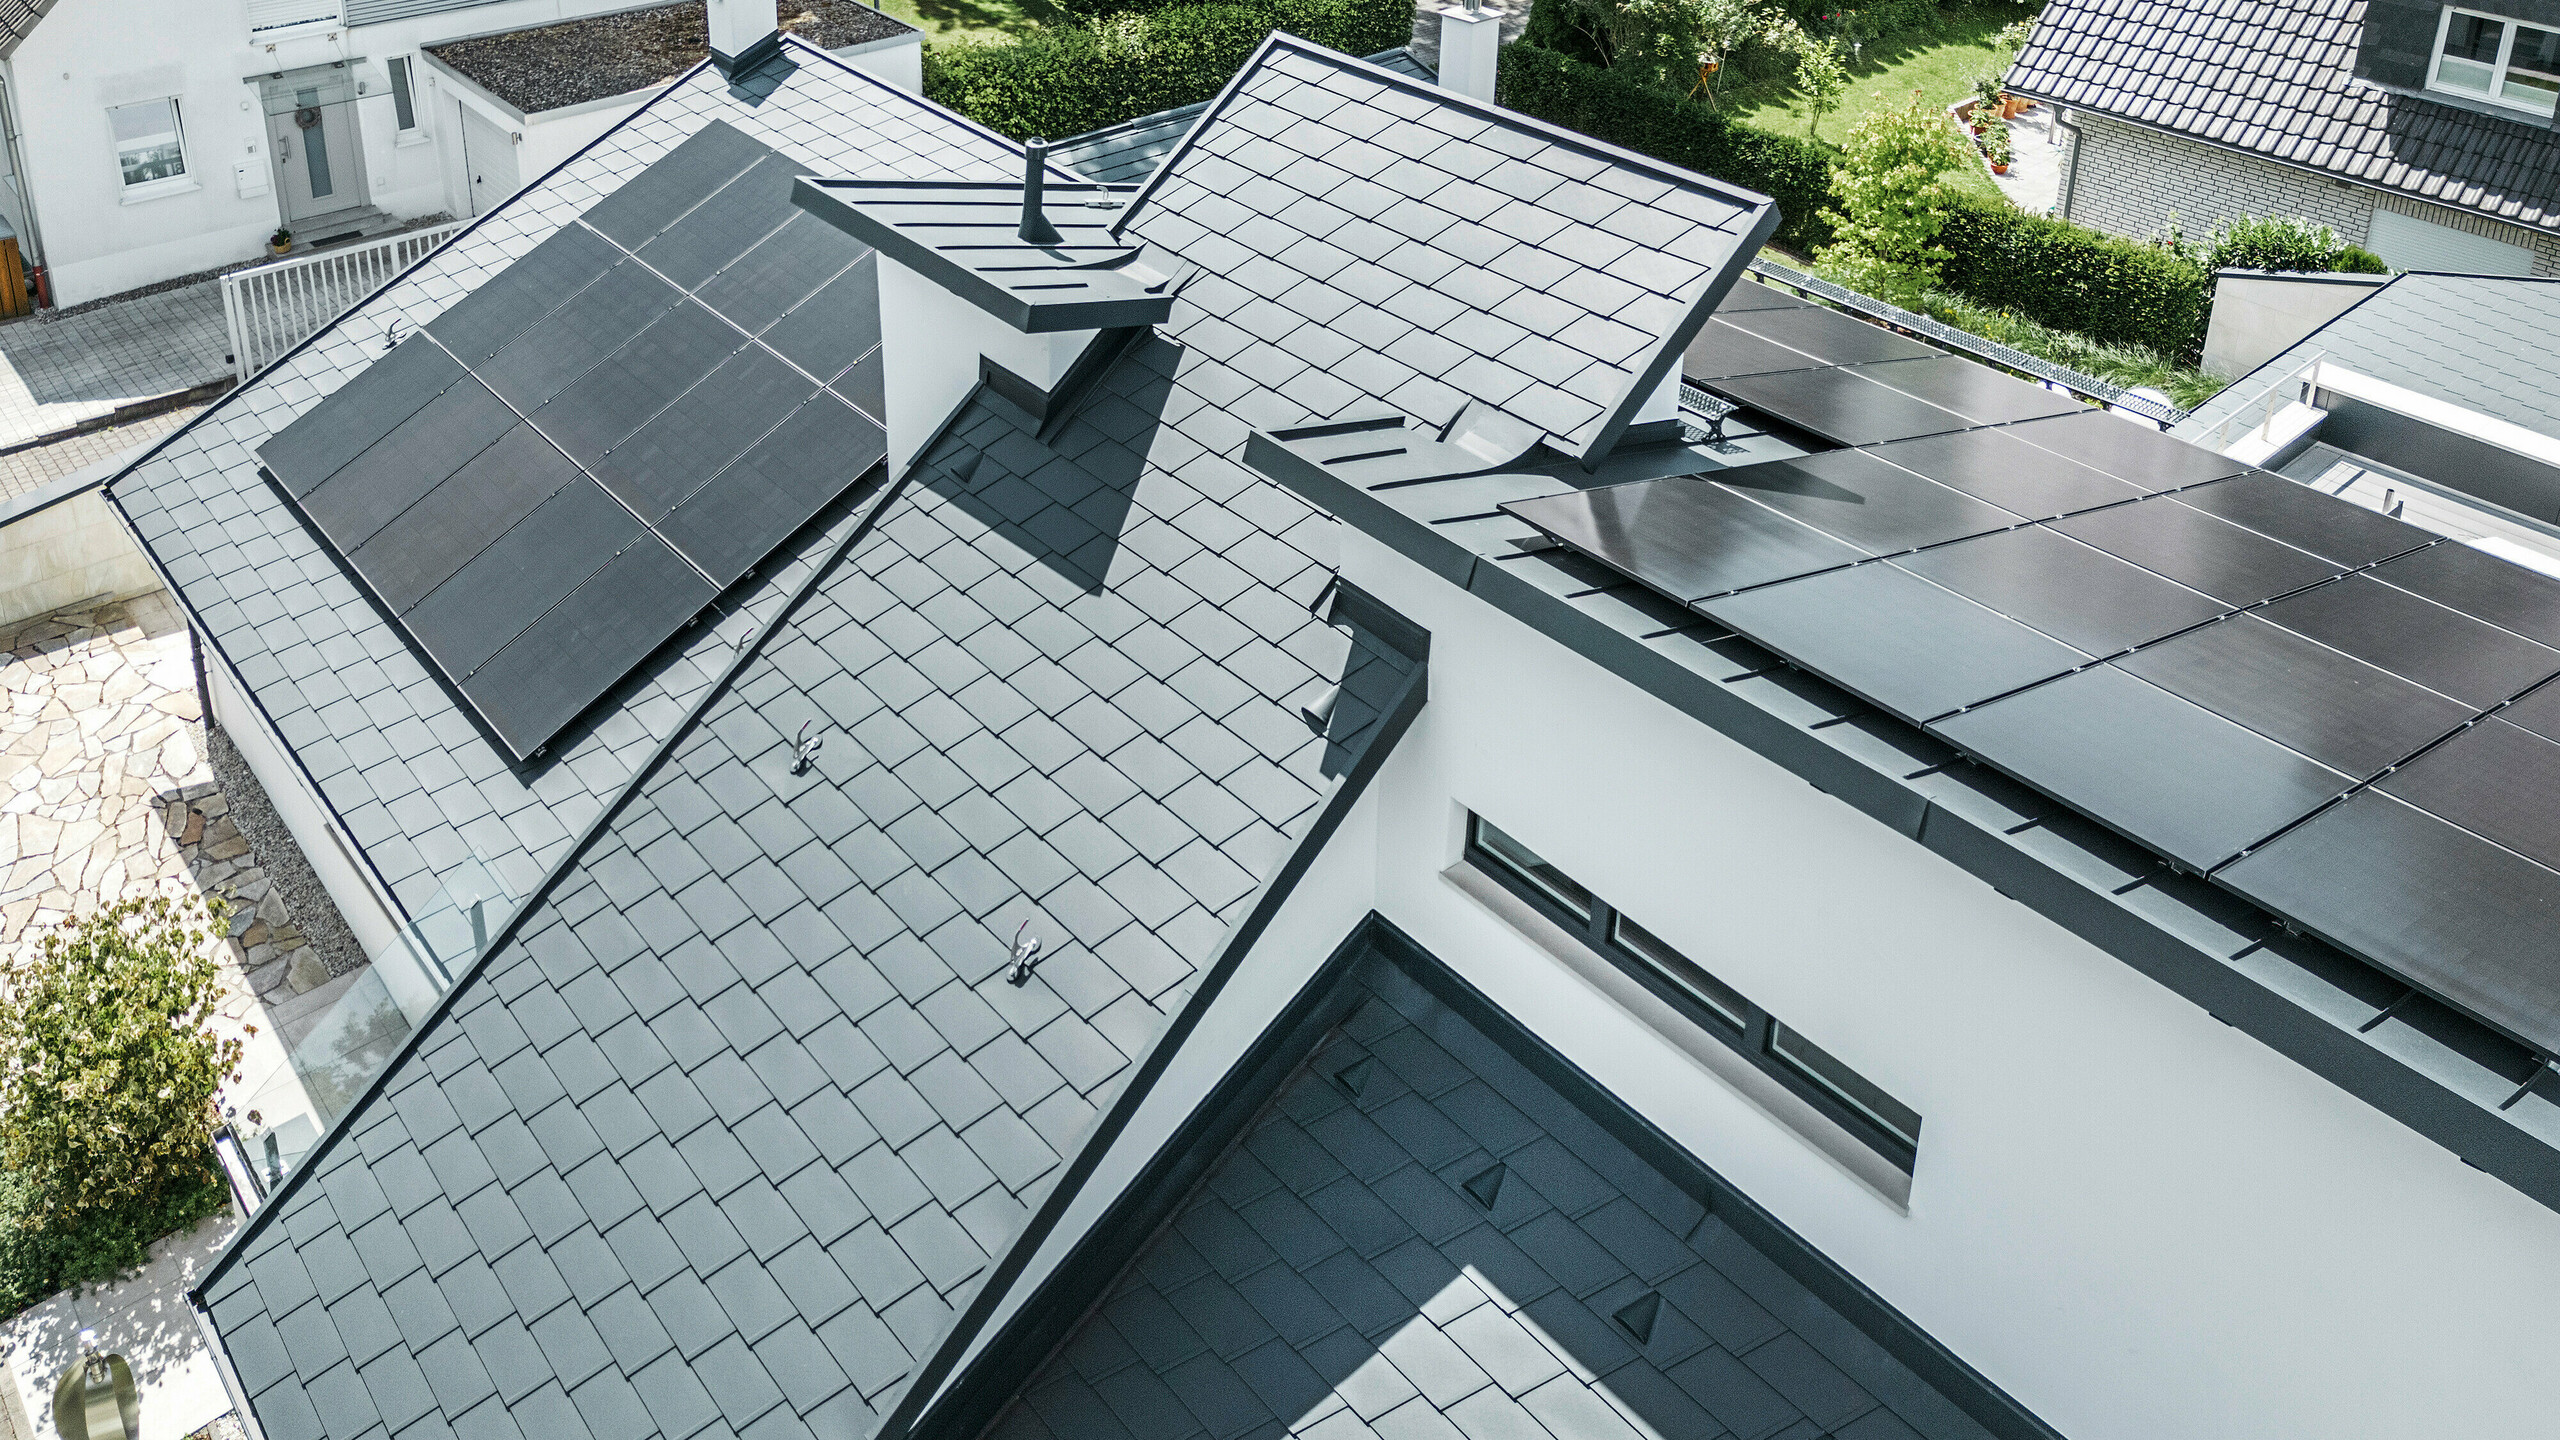 Pohľad z vtáčej perspektívy na rôzne úrovne strechy moderného rodinného domu v Dortmunde, na ktorom boli použité strešné šindle PREFA DS.19 a PREFALZ vo farbe P.10 antracit, ako aj veľkoplošný fotovoltický systém.